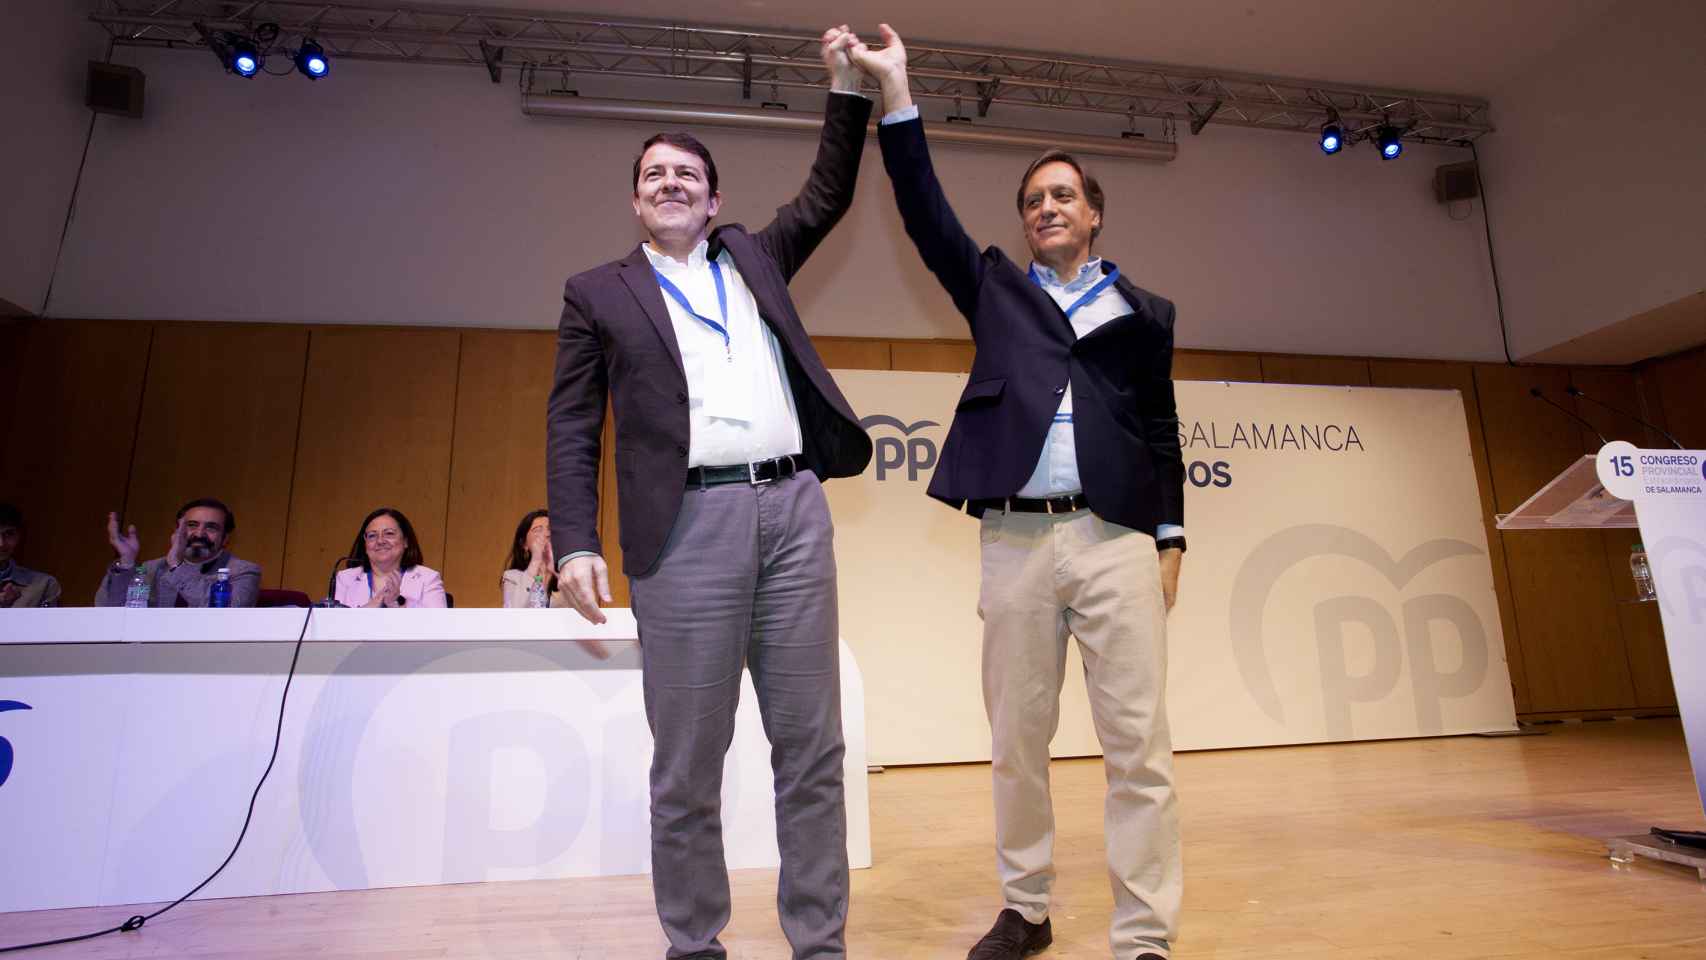 El presidente del PP de Castilla y León, Alfonso Fernández Mañueco, clausura el acto junto al presidente electo, Carlos G. Carbayo